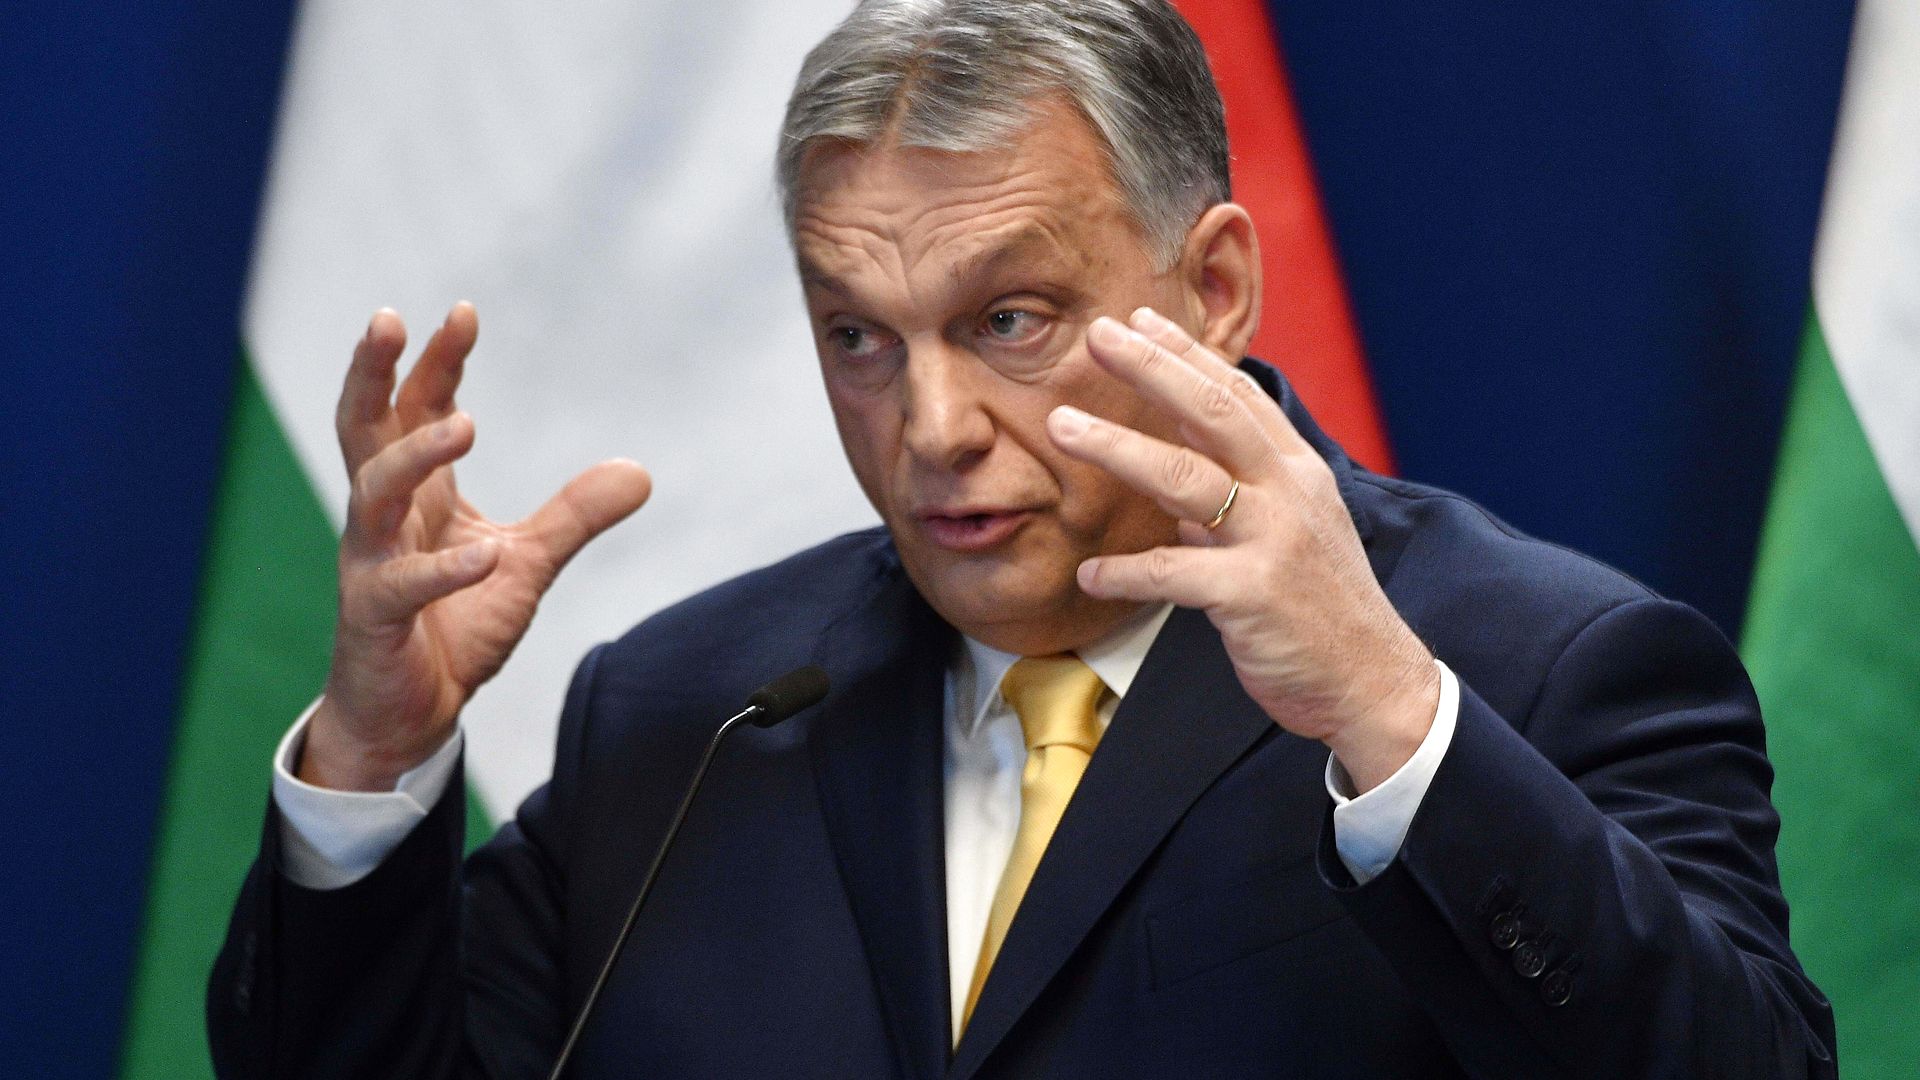 Ole Aabenhus om Orbáns Ungarn: En pind til EU’s ligkiste? Svaret afhænger af de næste måneders kamp mellem de “nye” og “gamle” EU-lande